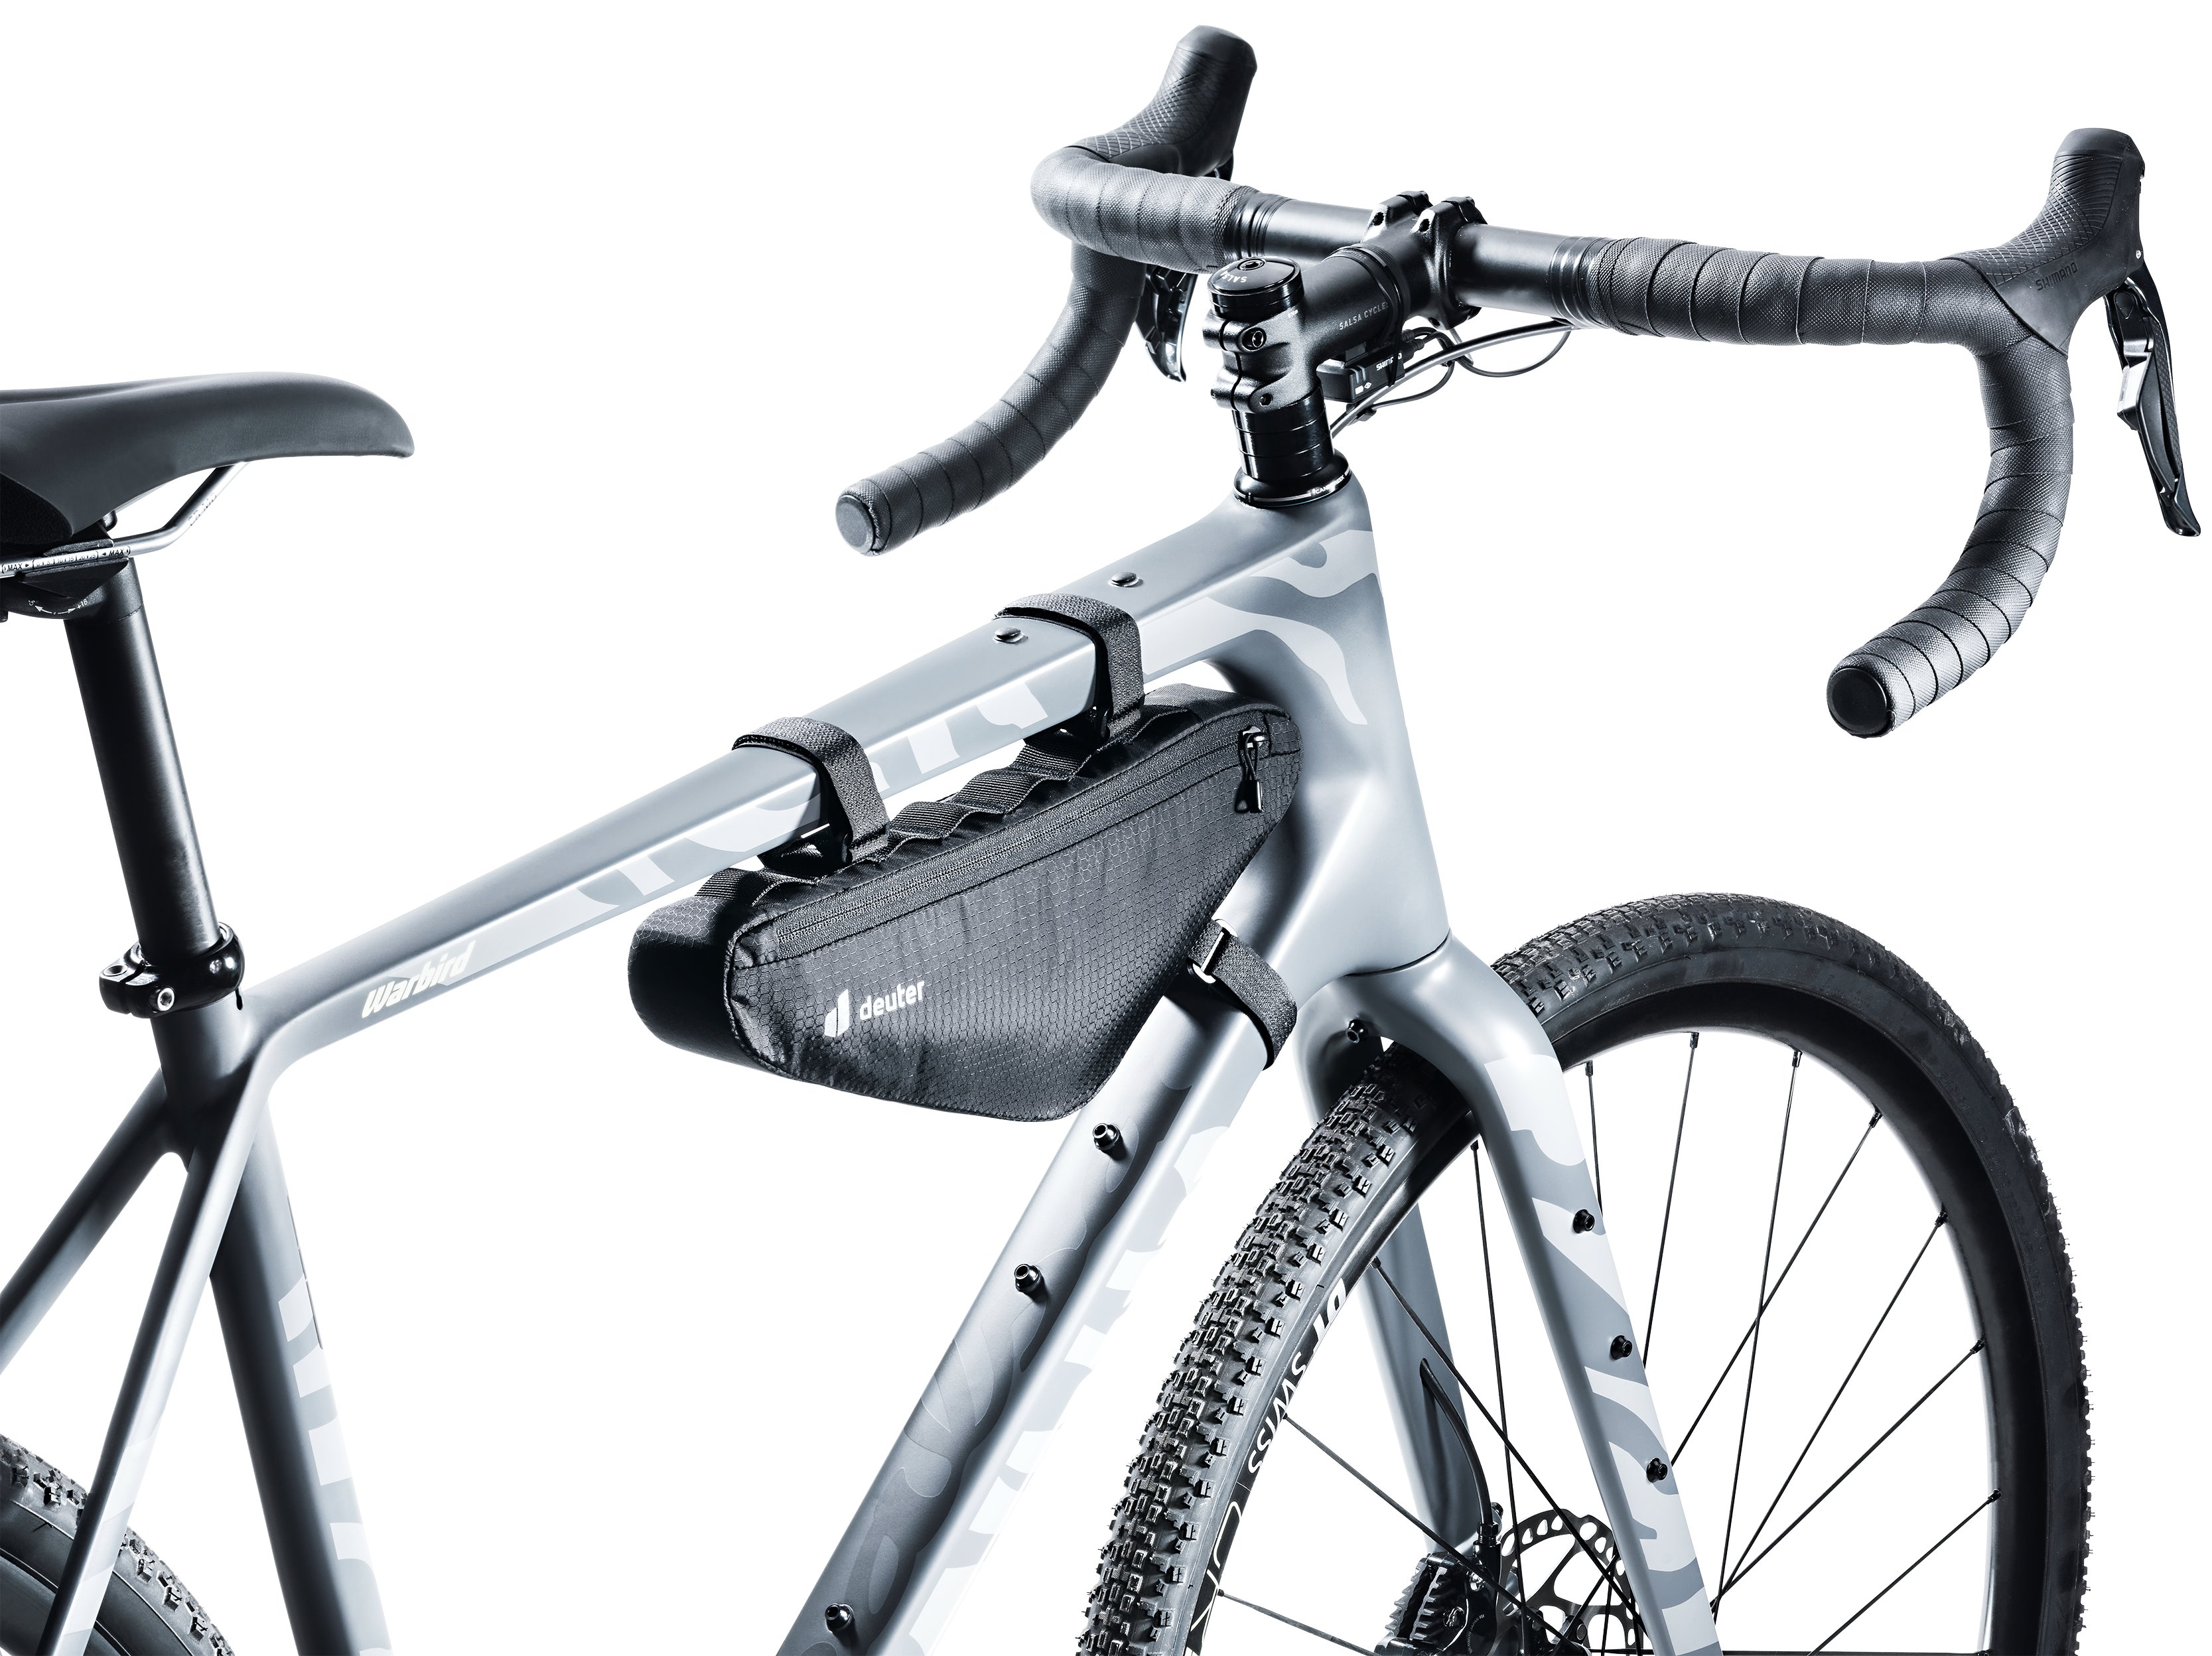 Triangle Deuter 1.5 black Fahrradtasche im Sonstiges kaufen Zubehör hier Front Bag Online-Shop günstig